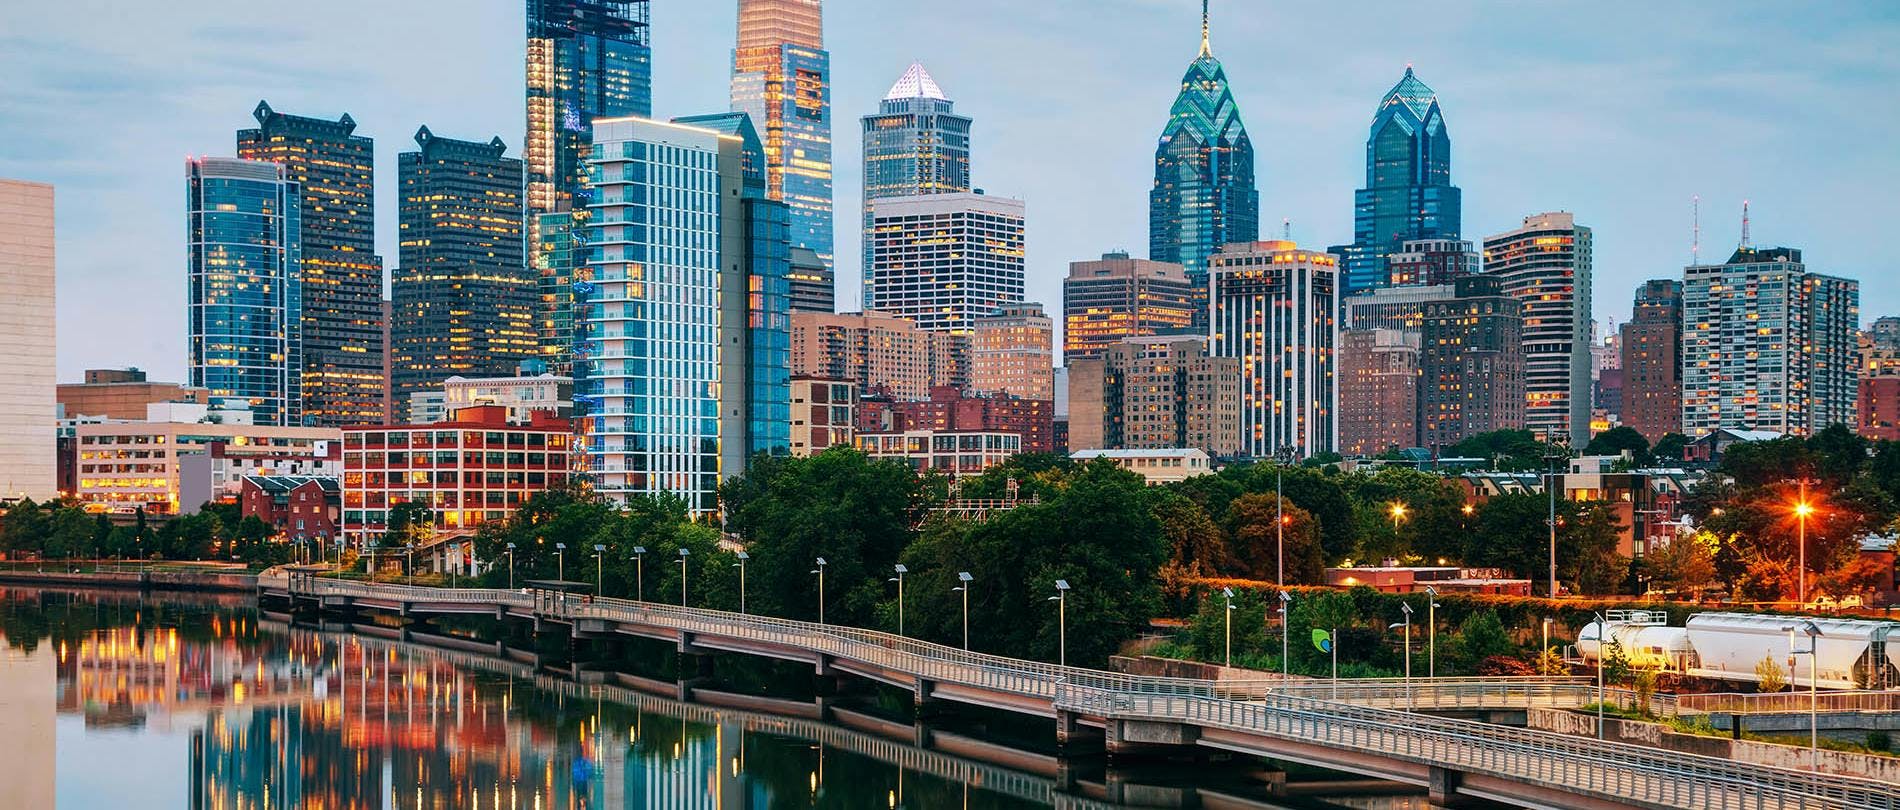 Philadelphia Water City View